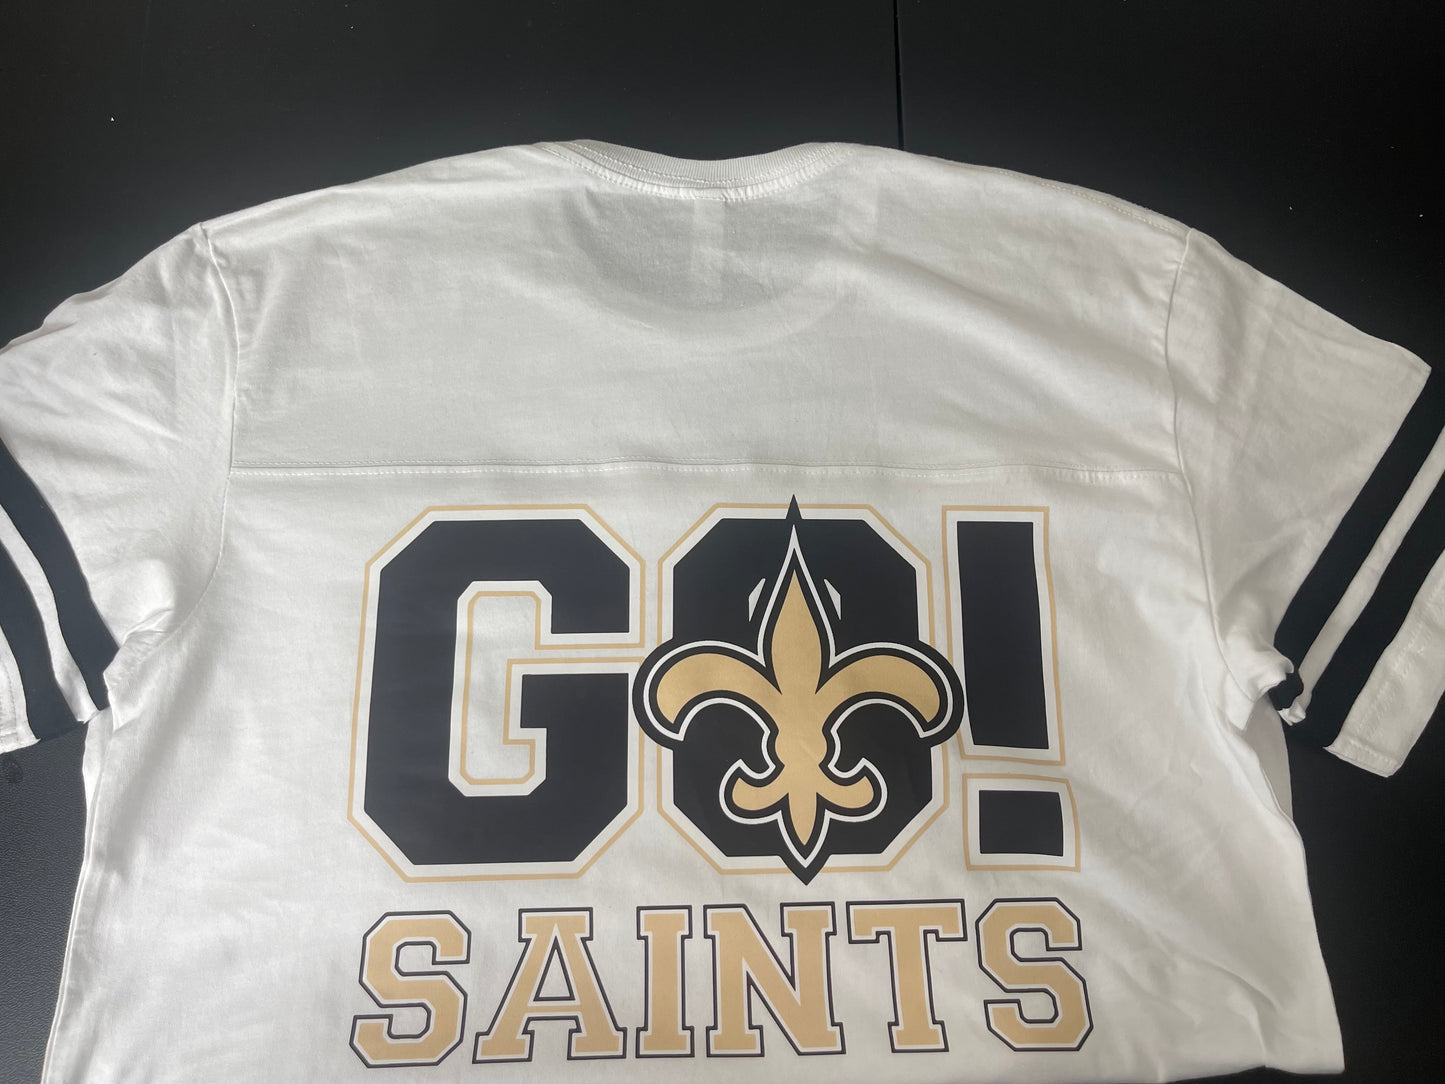 Go Saints!